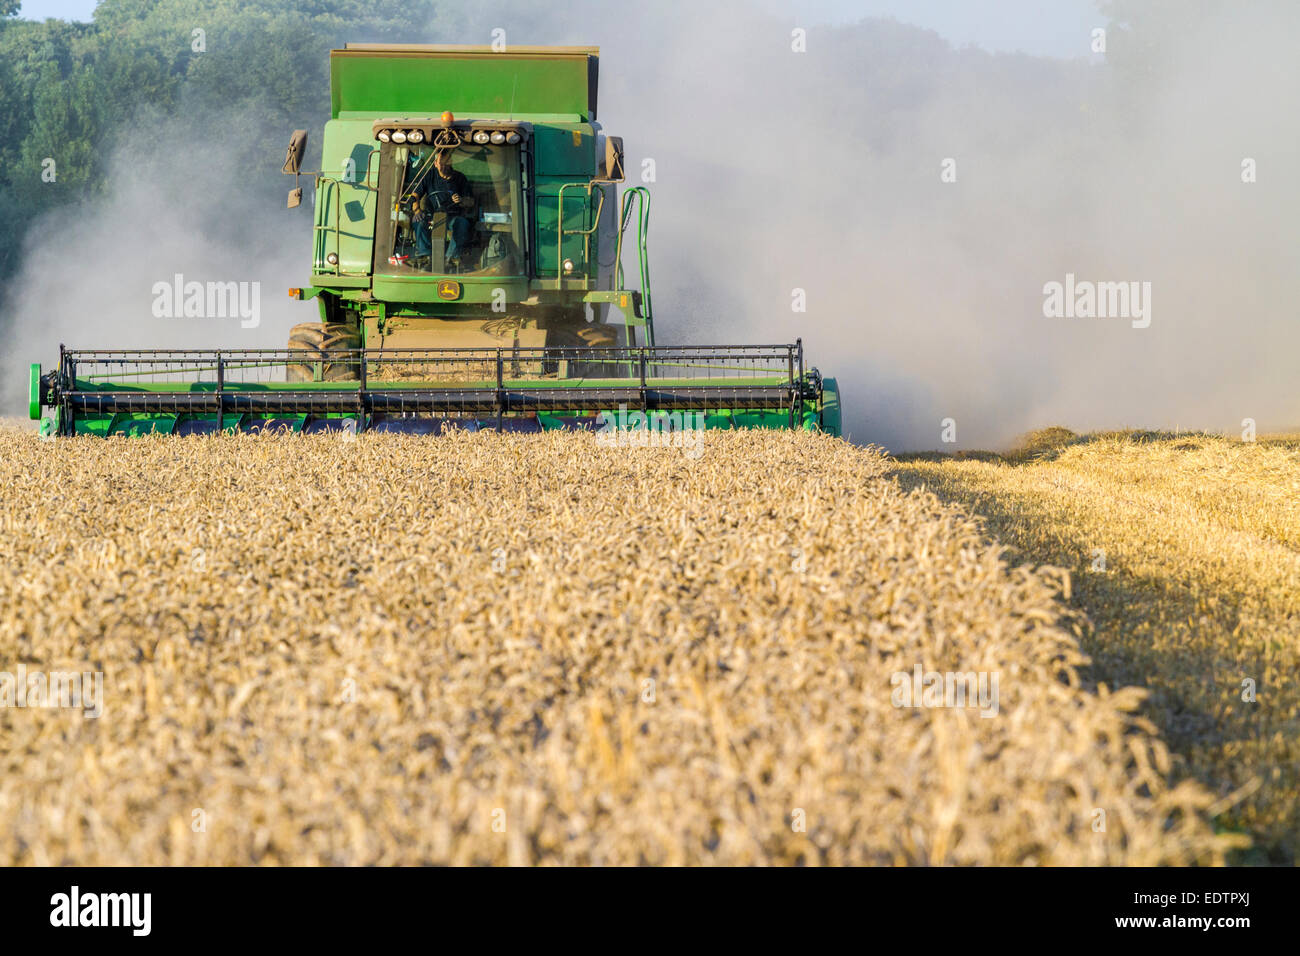 Récolte de blé. Moissonneuse-batteuse dans une récolte d'un champ de blé dans le Nottinghamshire, Angleterre, RU Banque D'Images